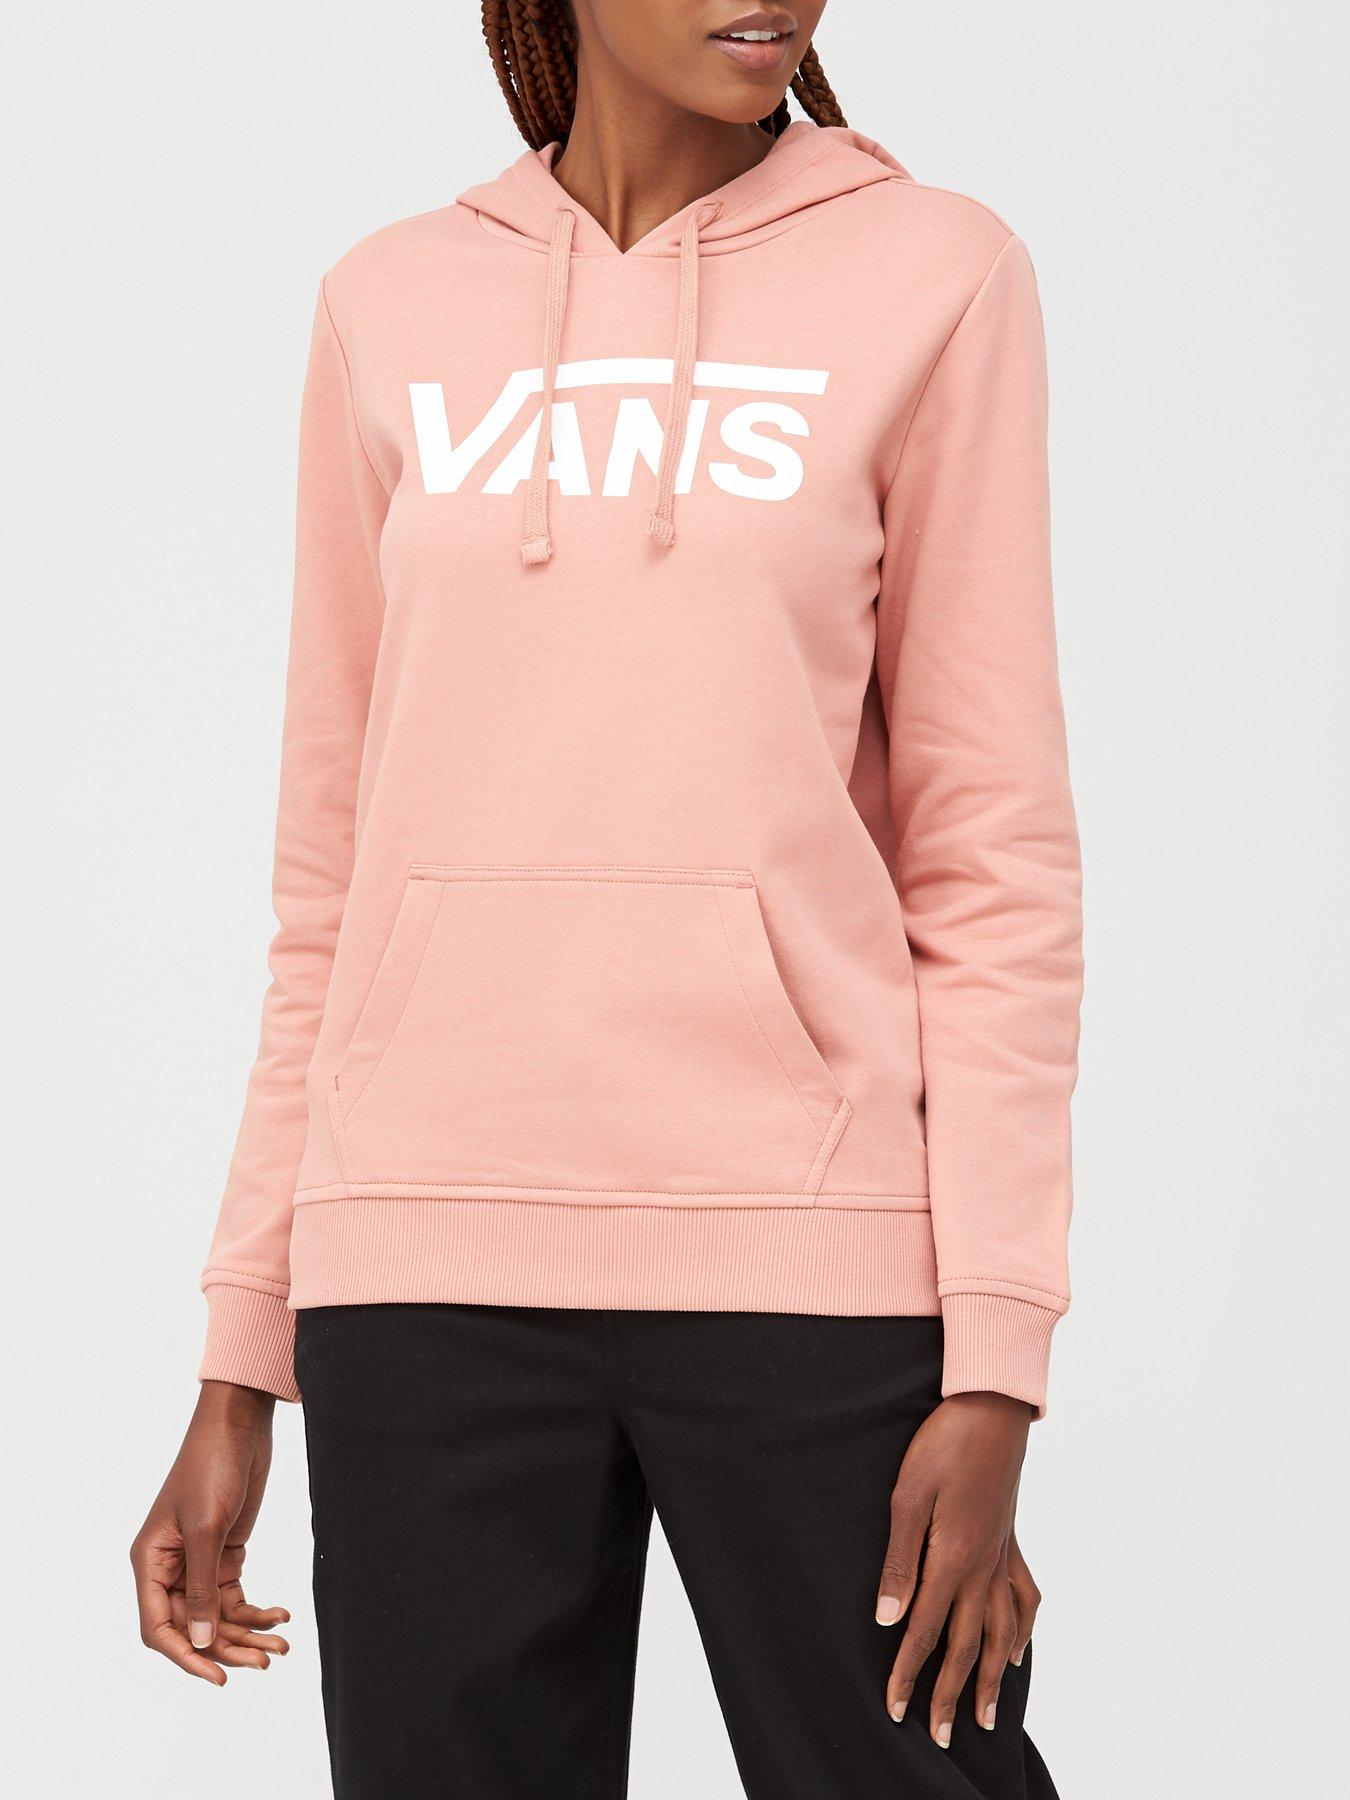 vans female hoodies